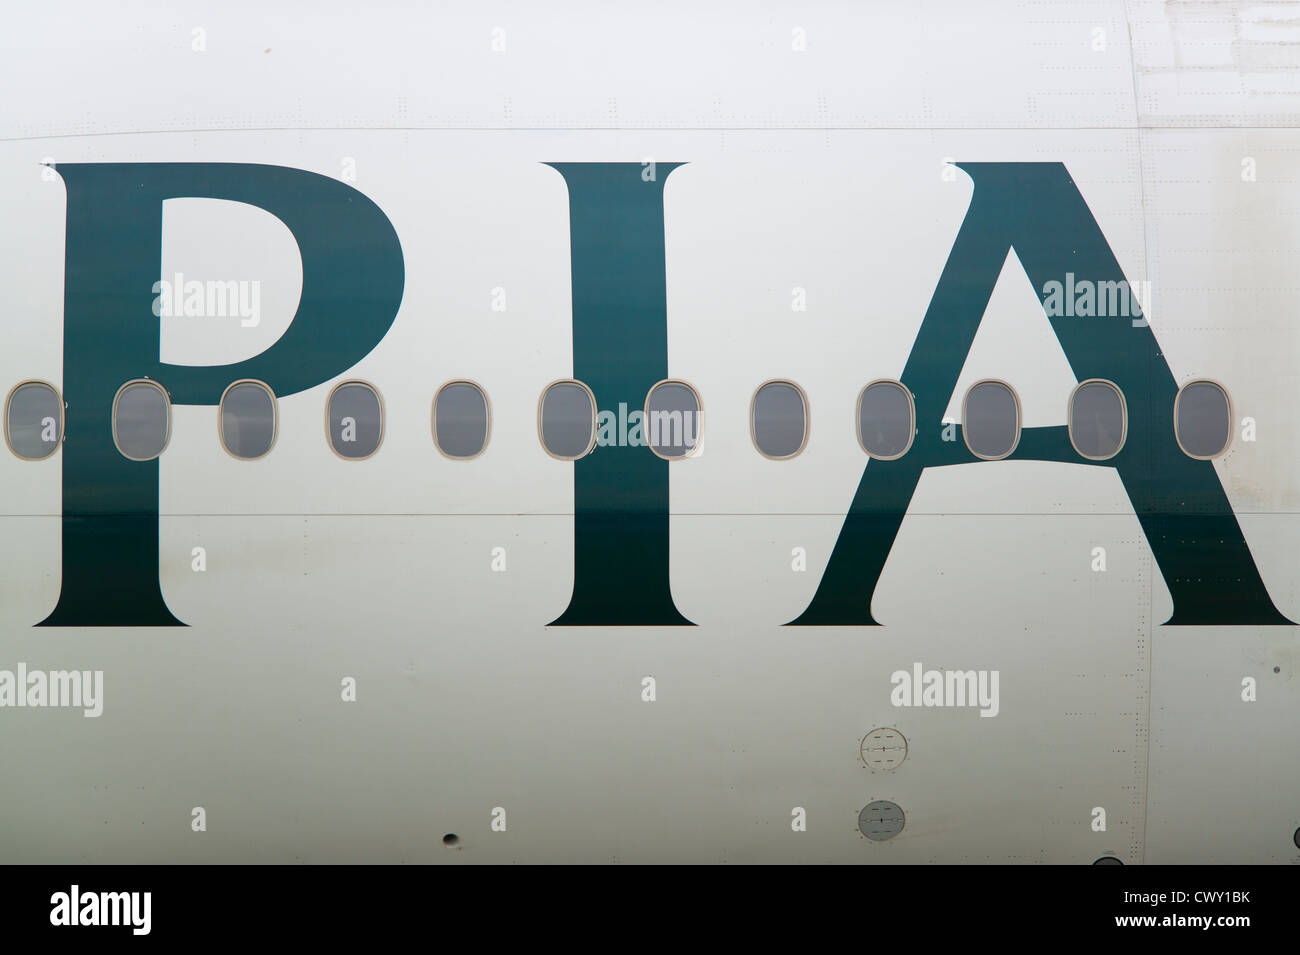 Un gros plan de la Pakistan International Airlines PIA logo sur le fuselage d'un avion de passagers (usage éditorial uniquement) Banque D'Images